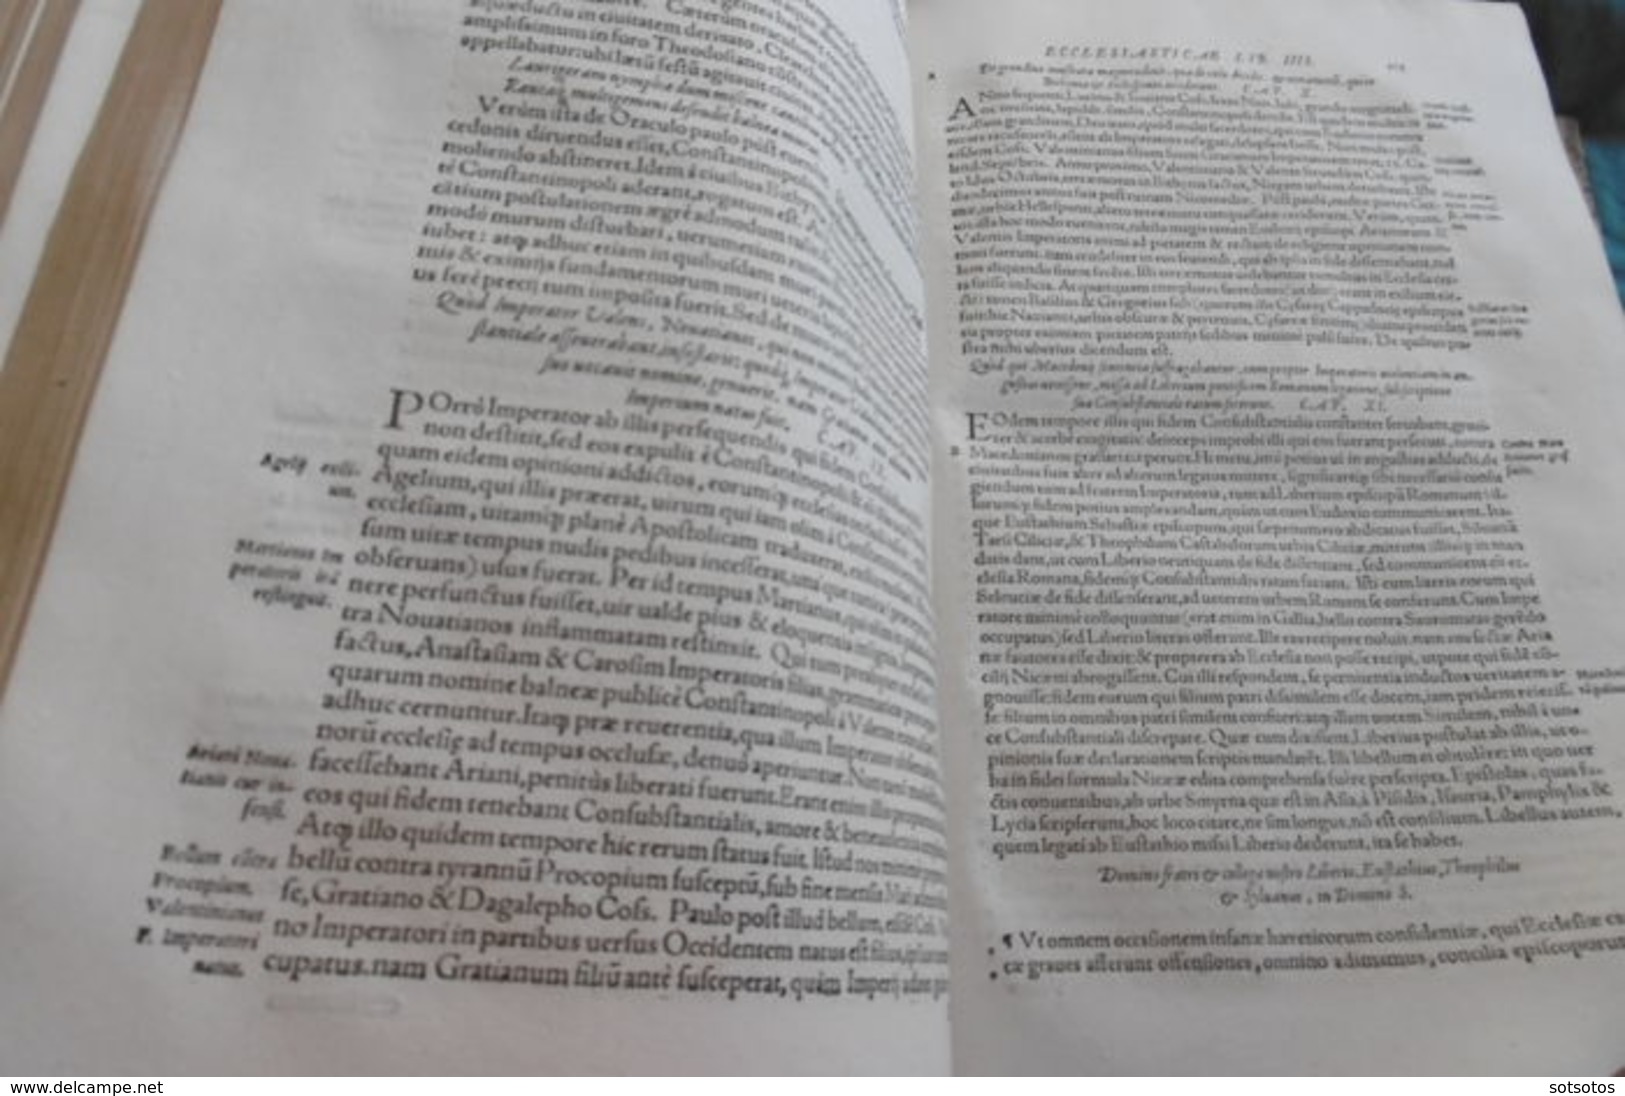 Scrittori Greci - Historiae ecclesiasticae scriptores Graeci - 1570